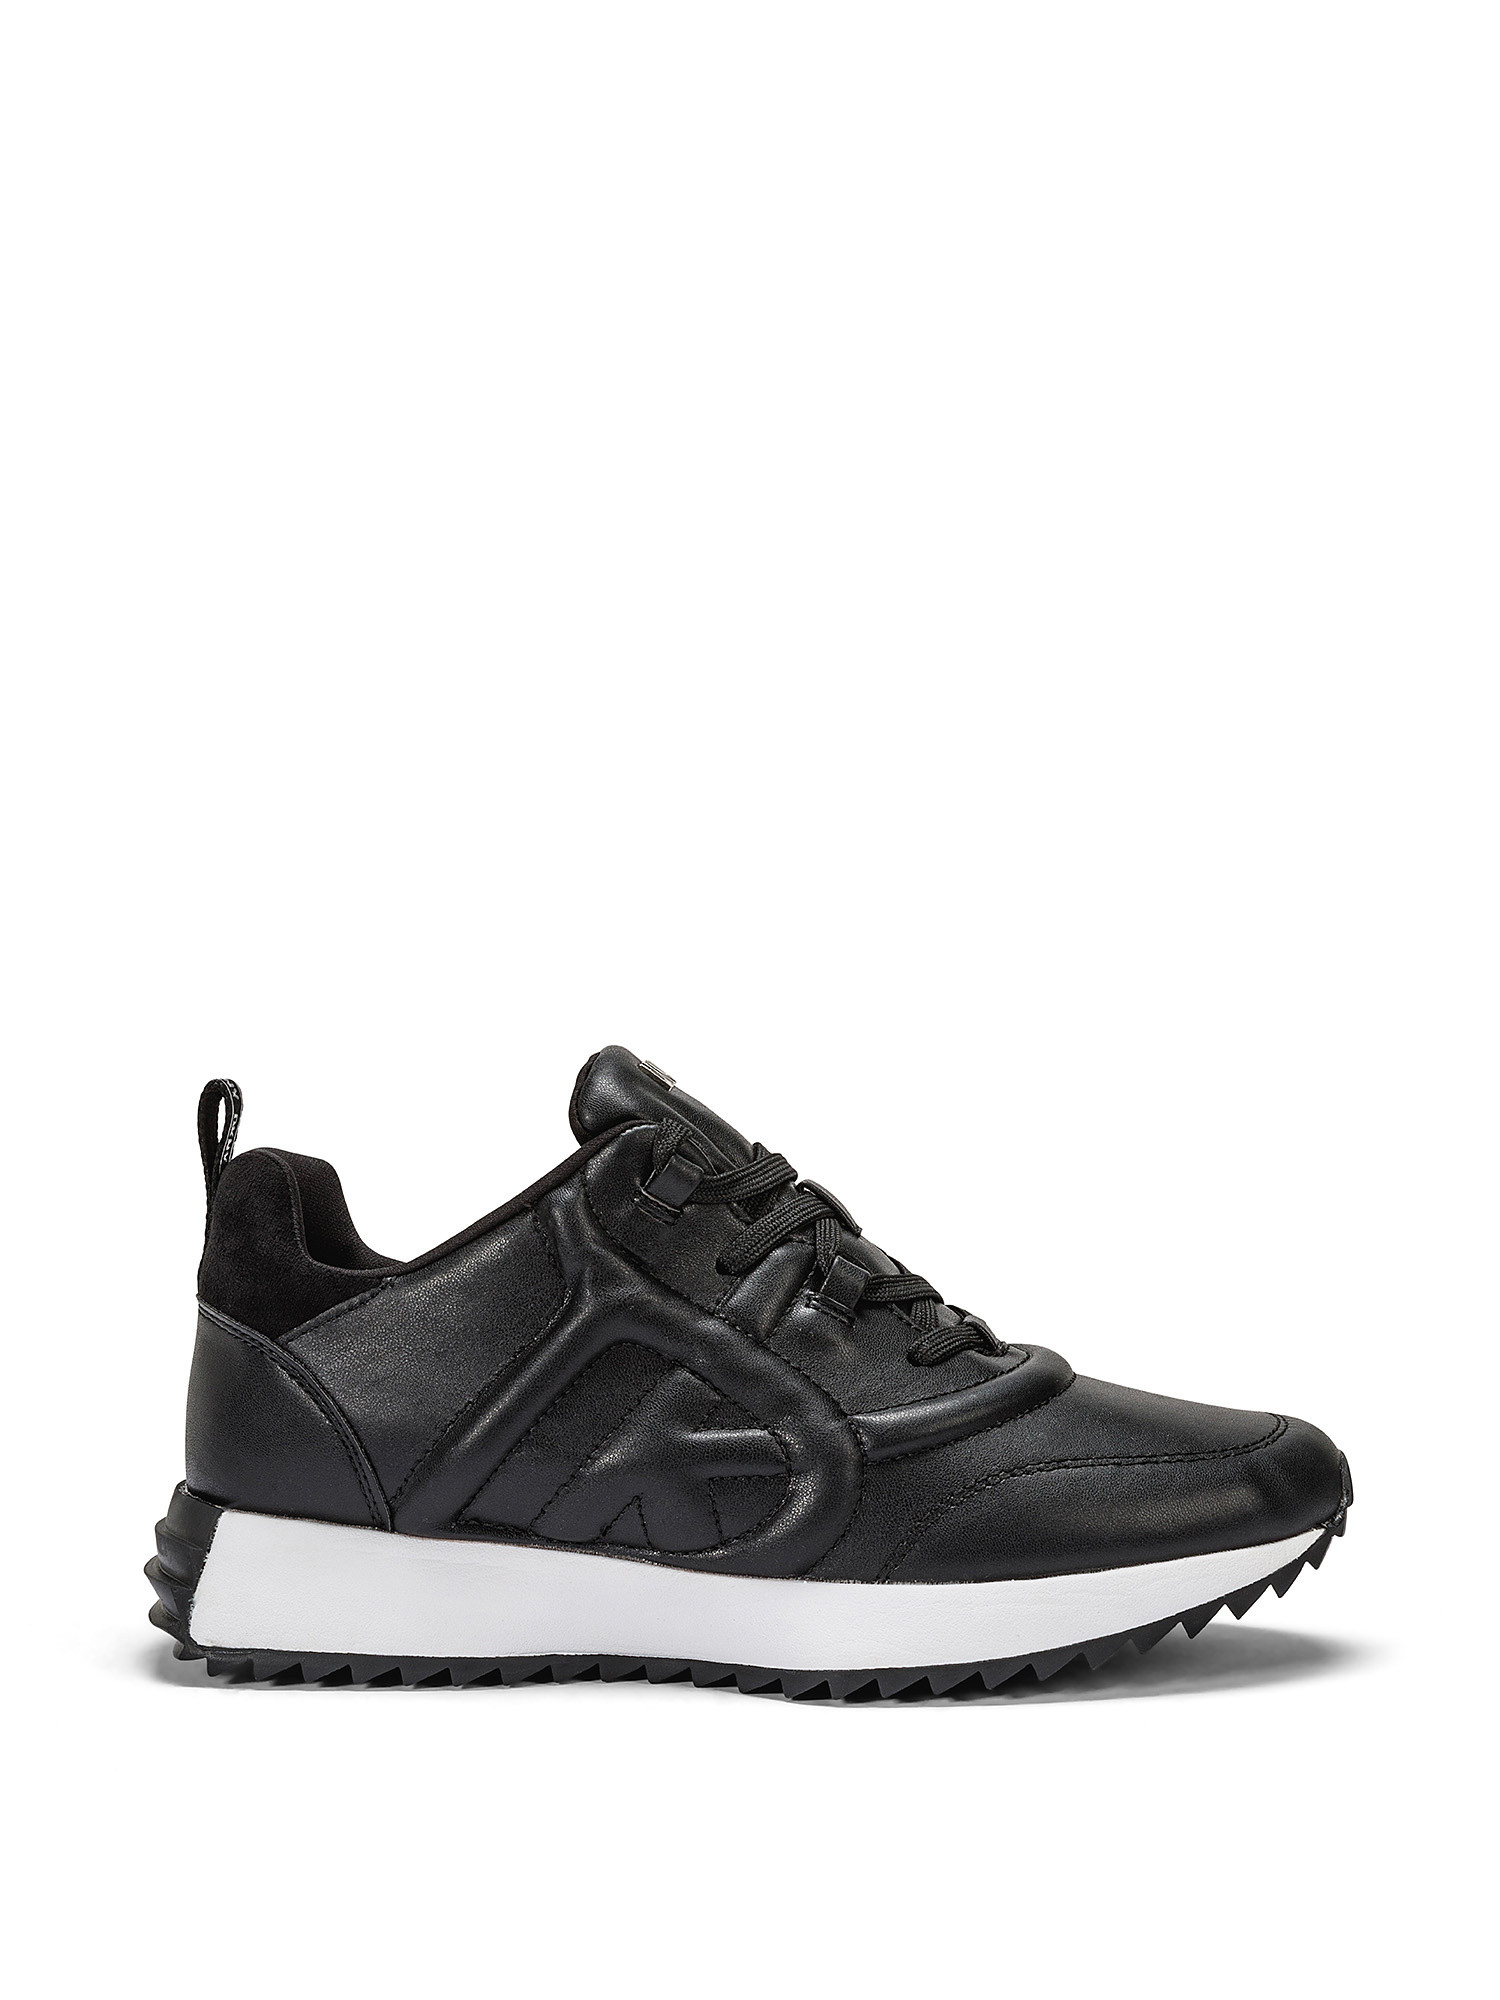 DKNY - Sneakers NIX, Black, large image number 0